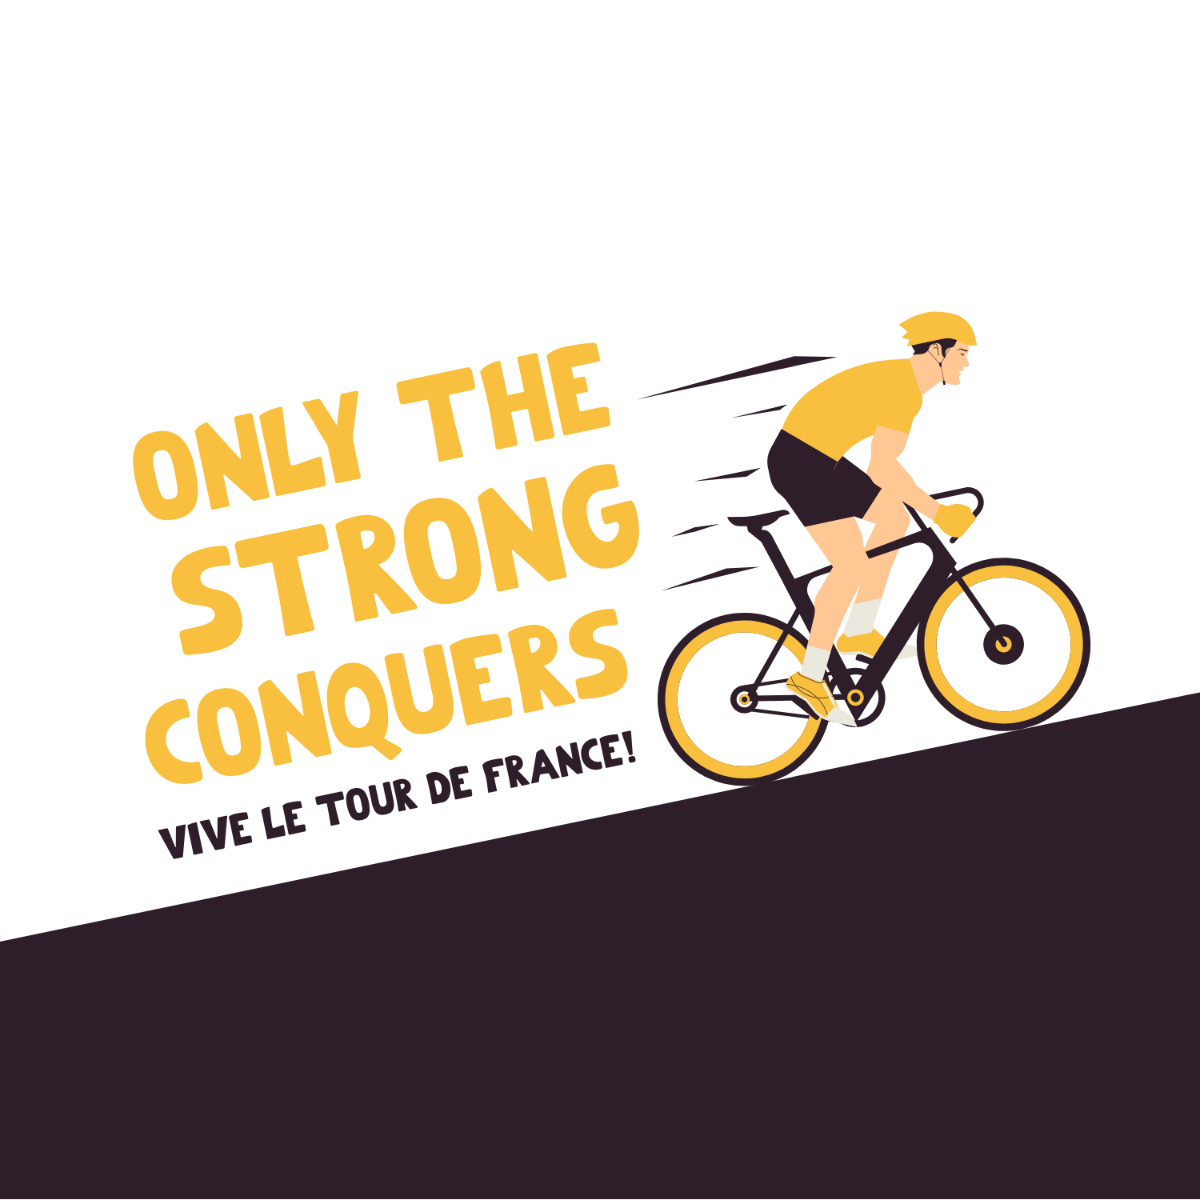 Free Tour de France Quote Vector Template